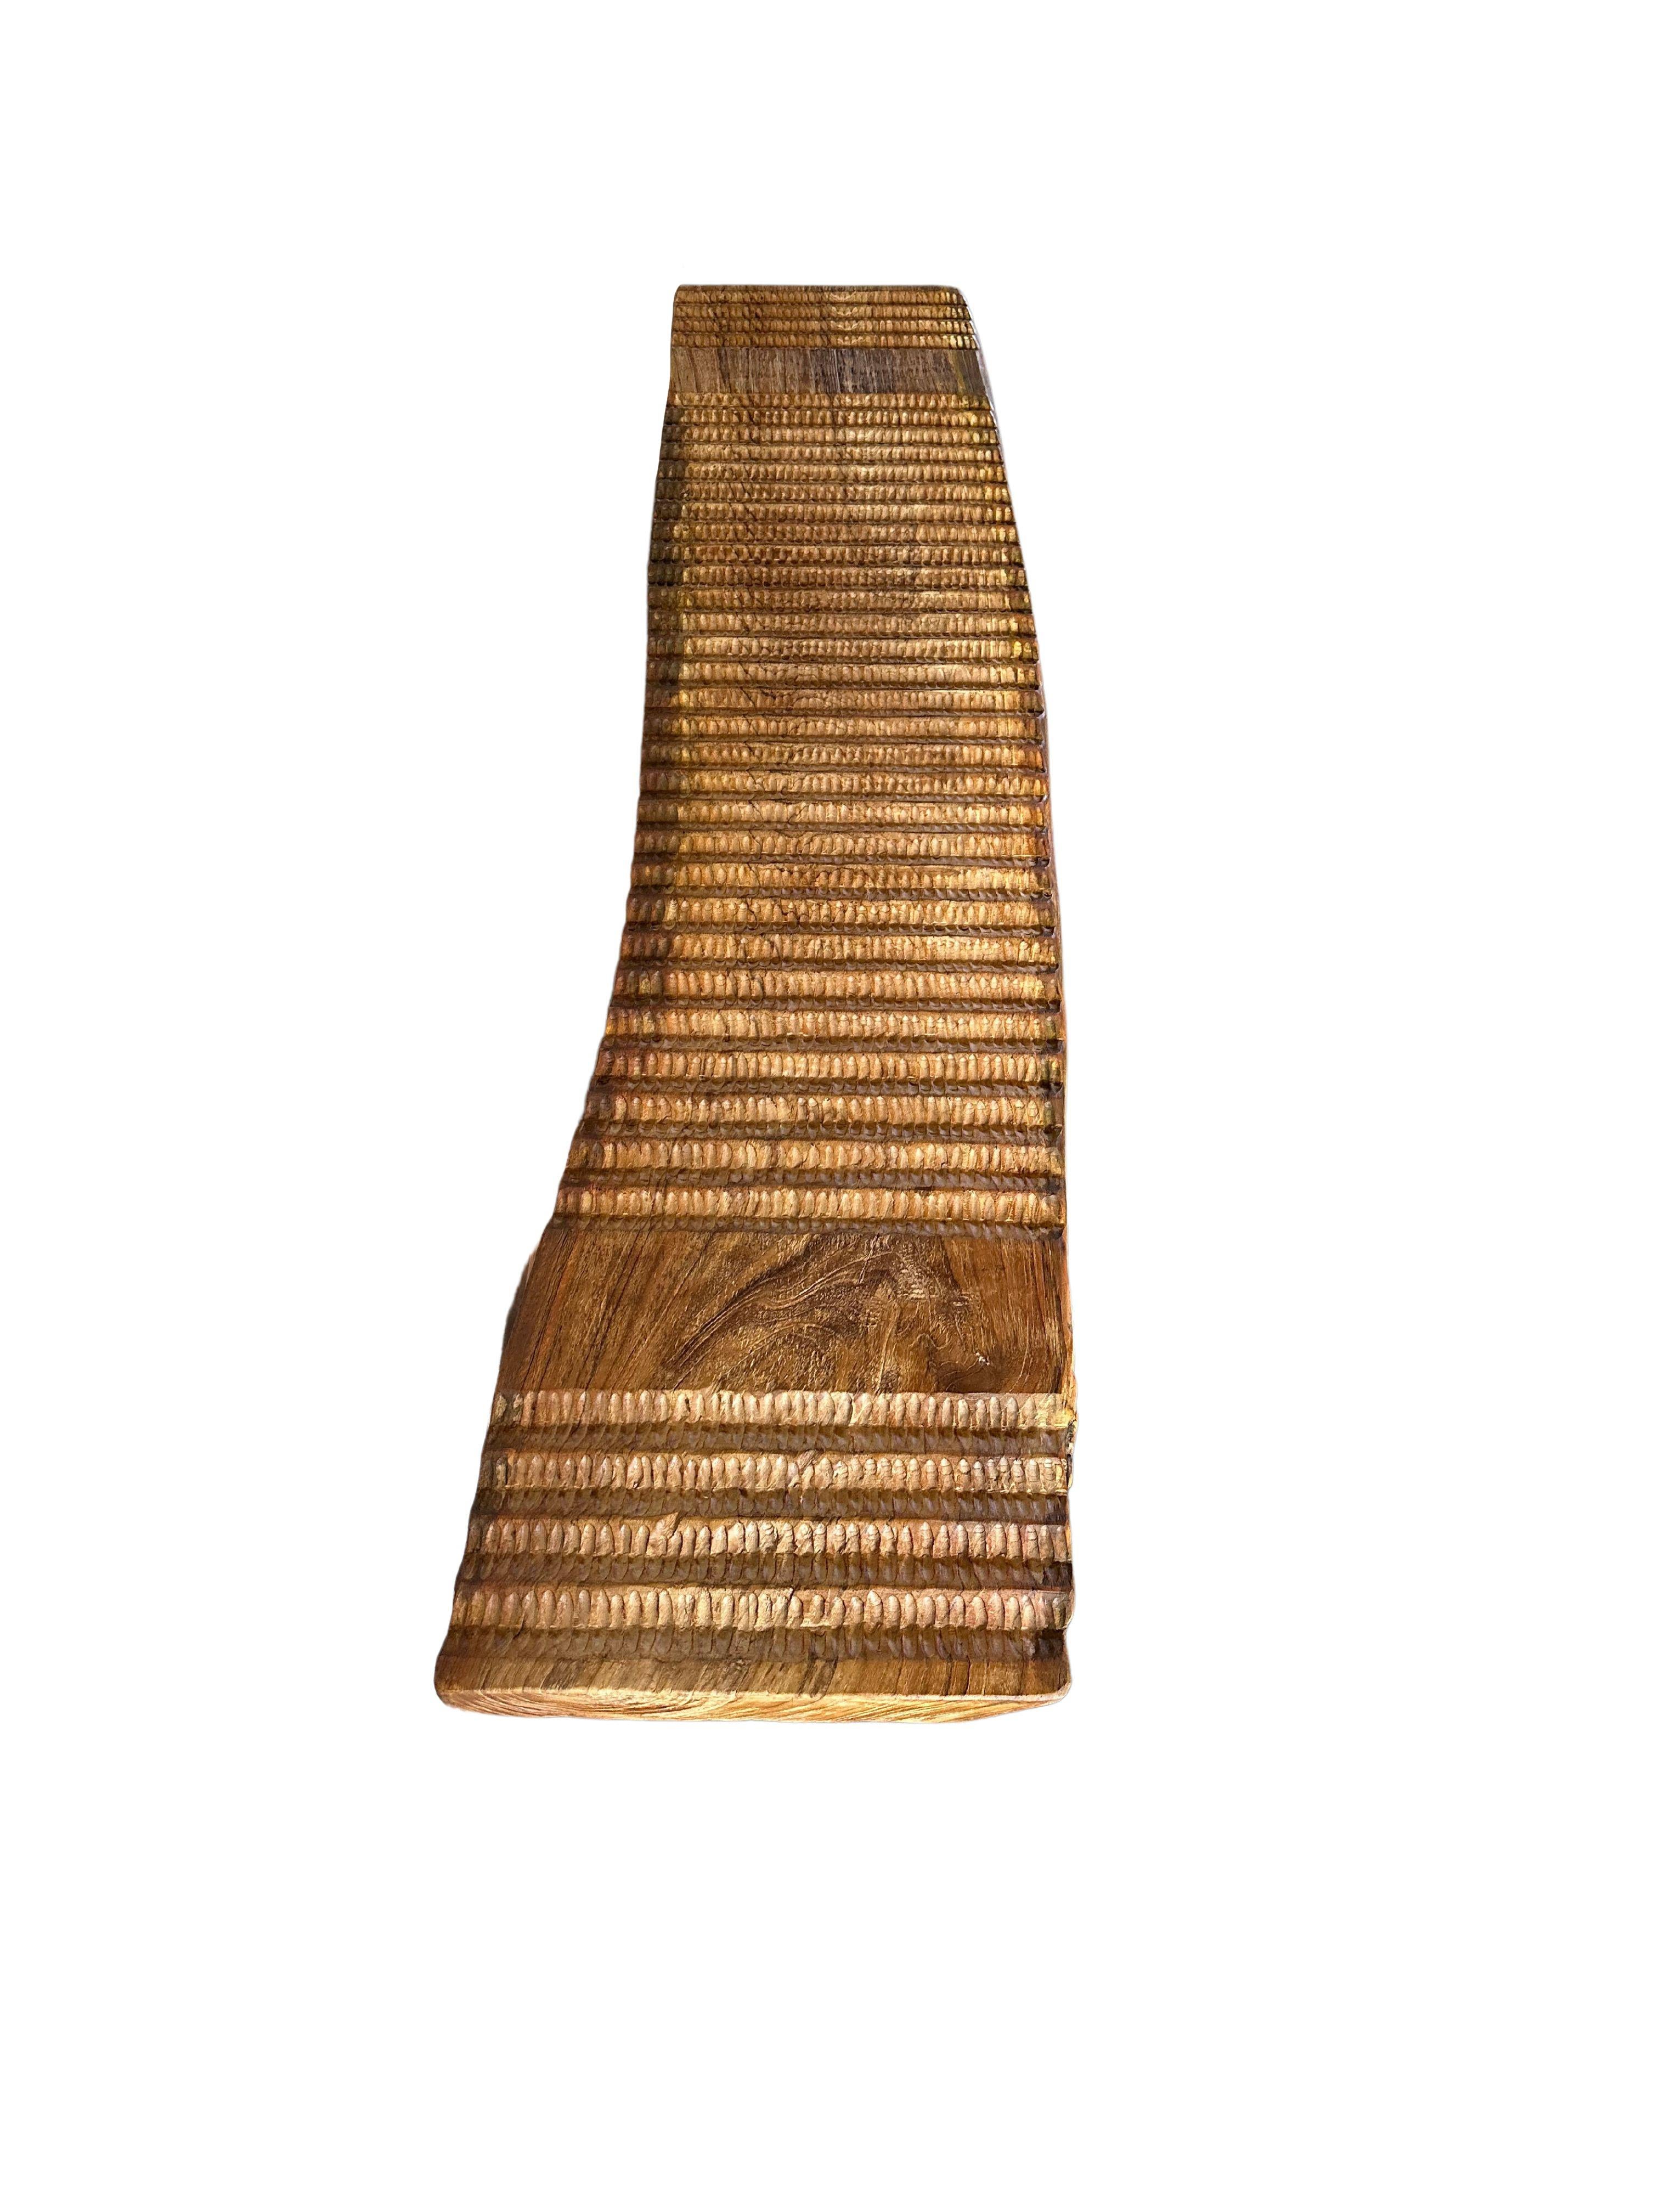 Teak Wood Sculptural Bench, Carved Detailing, Modern Organic For Sale 2